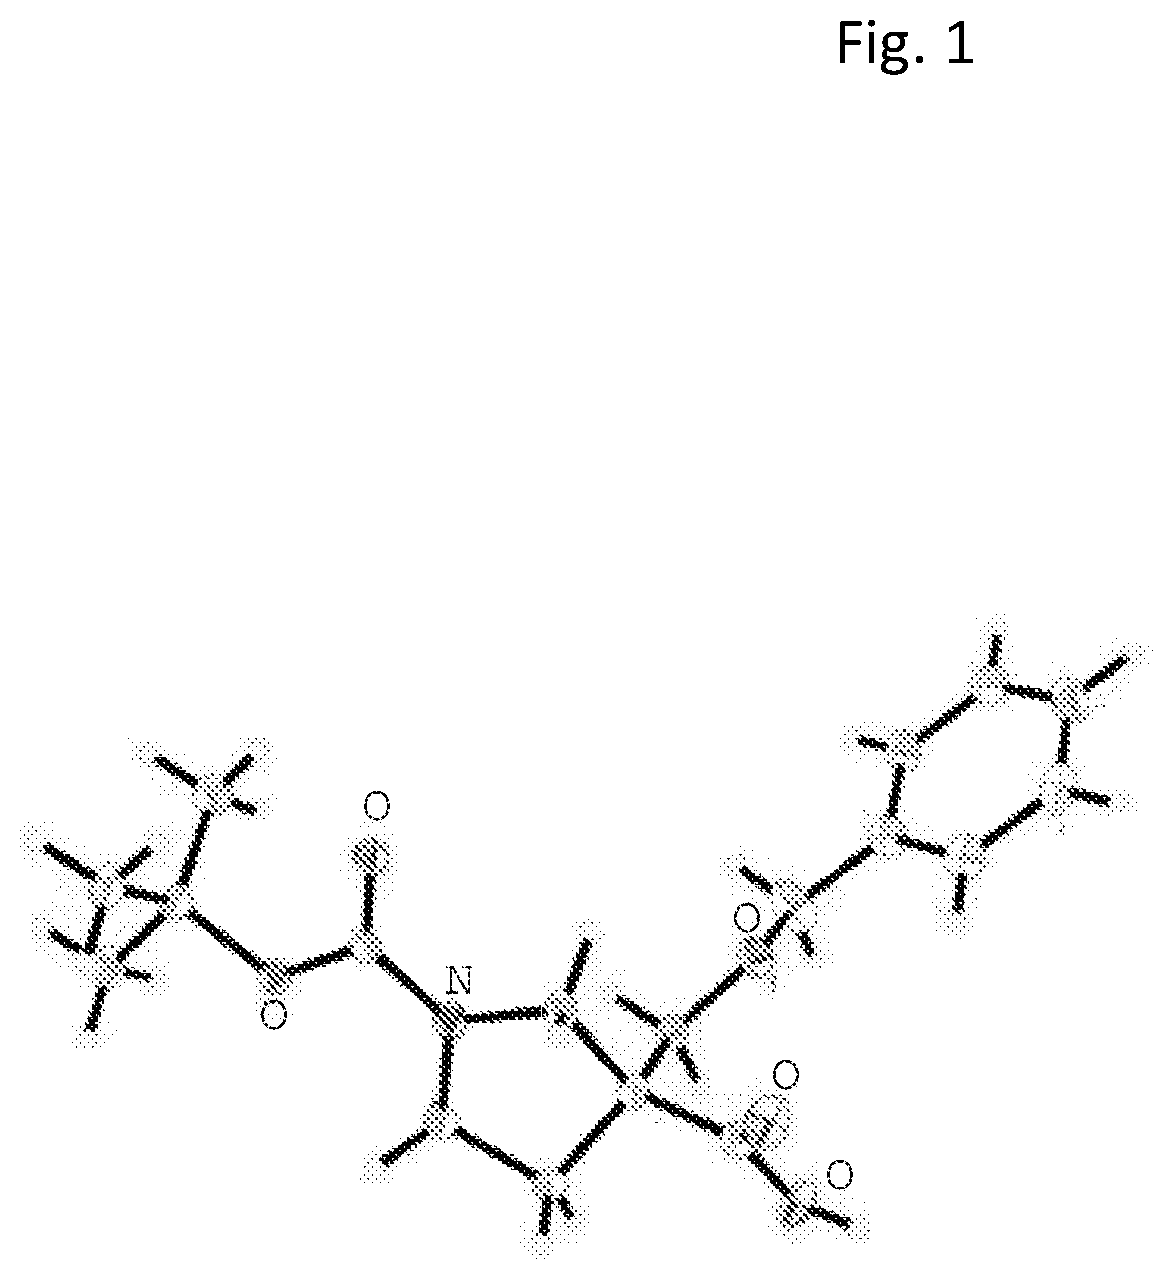 Polycyclic amines as opioid receptor modulators